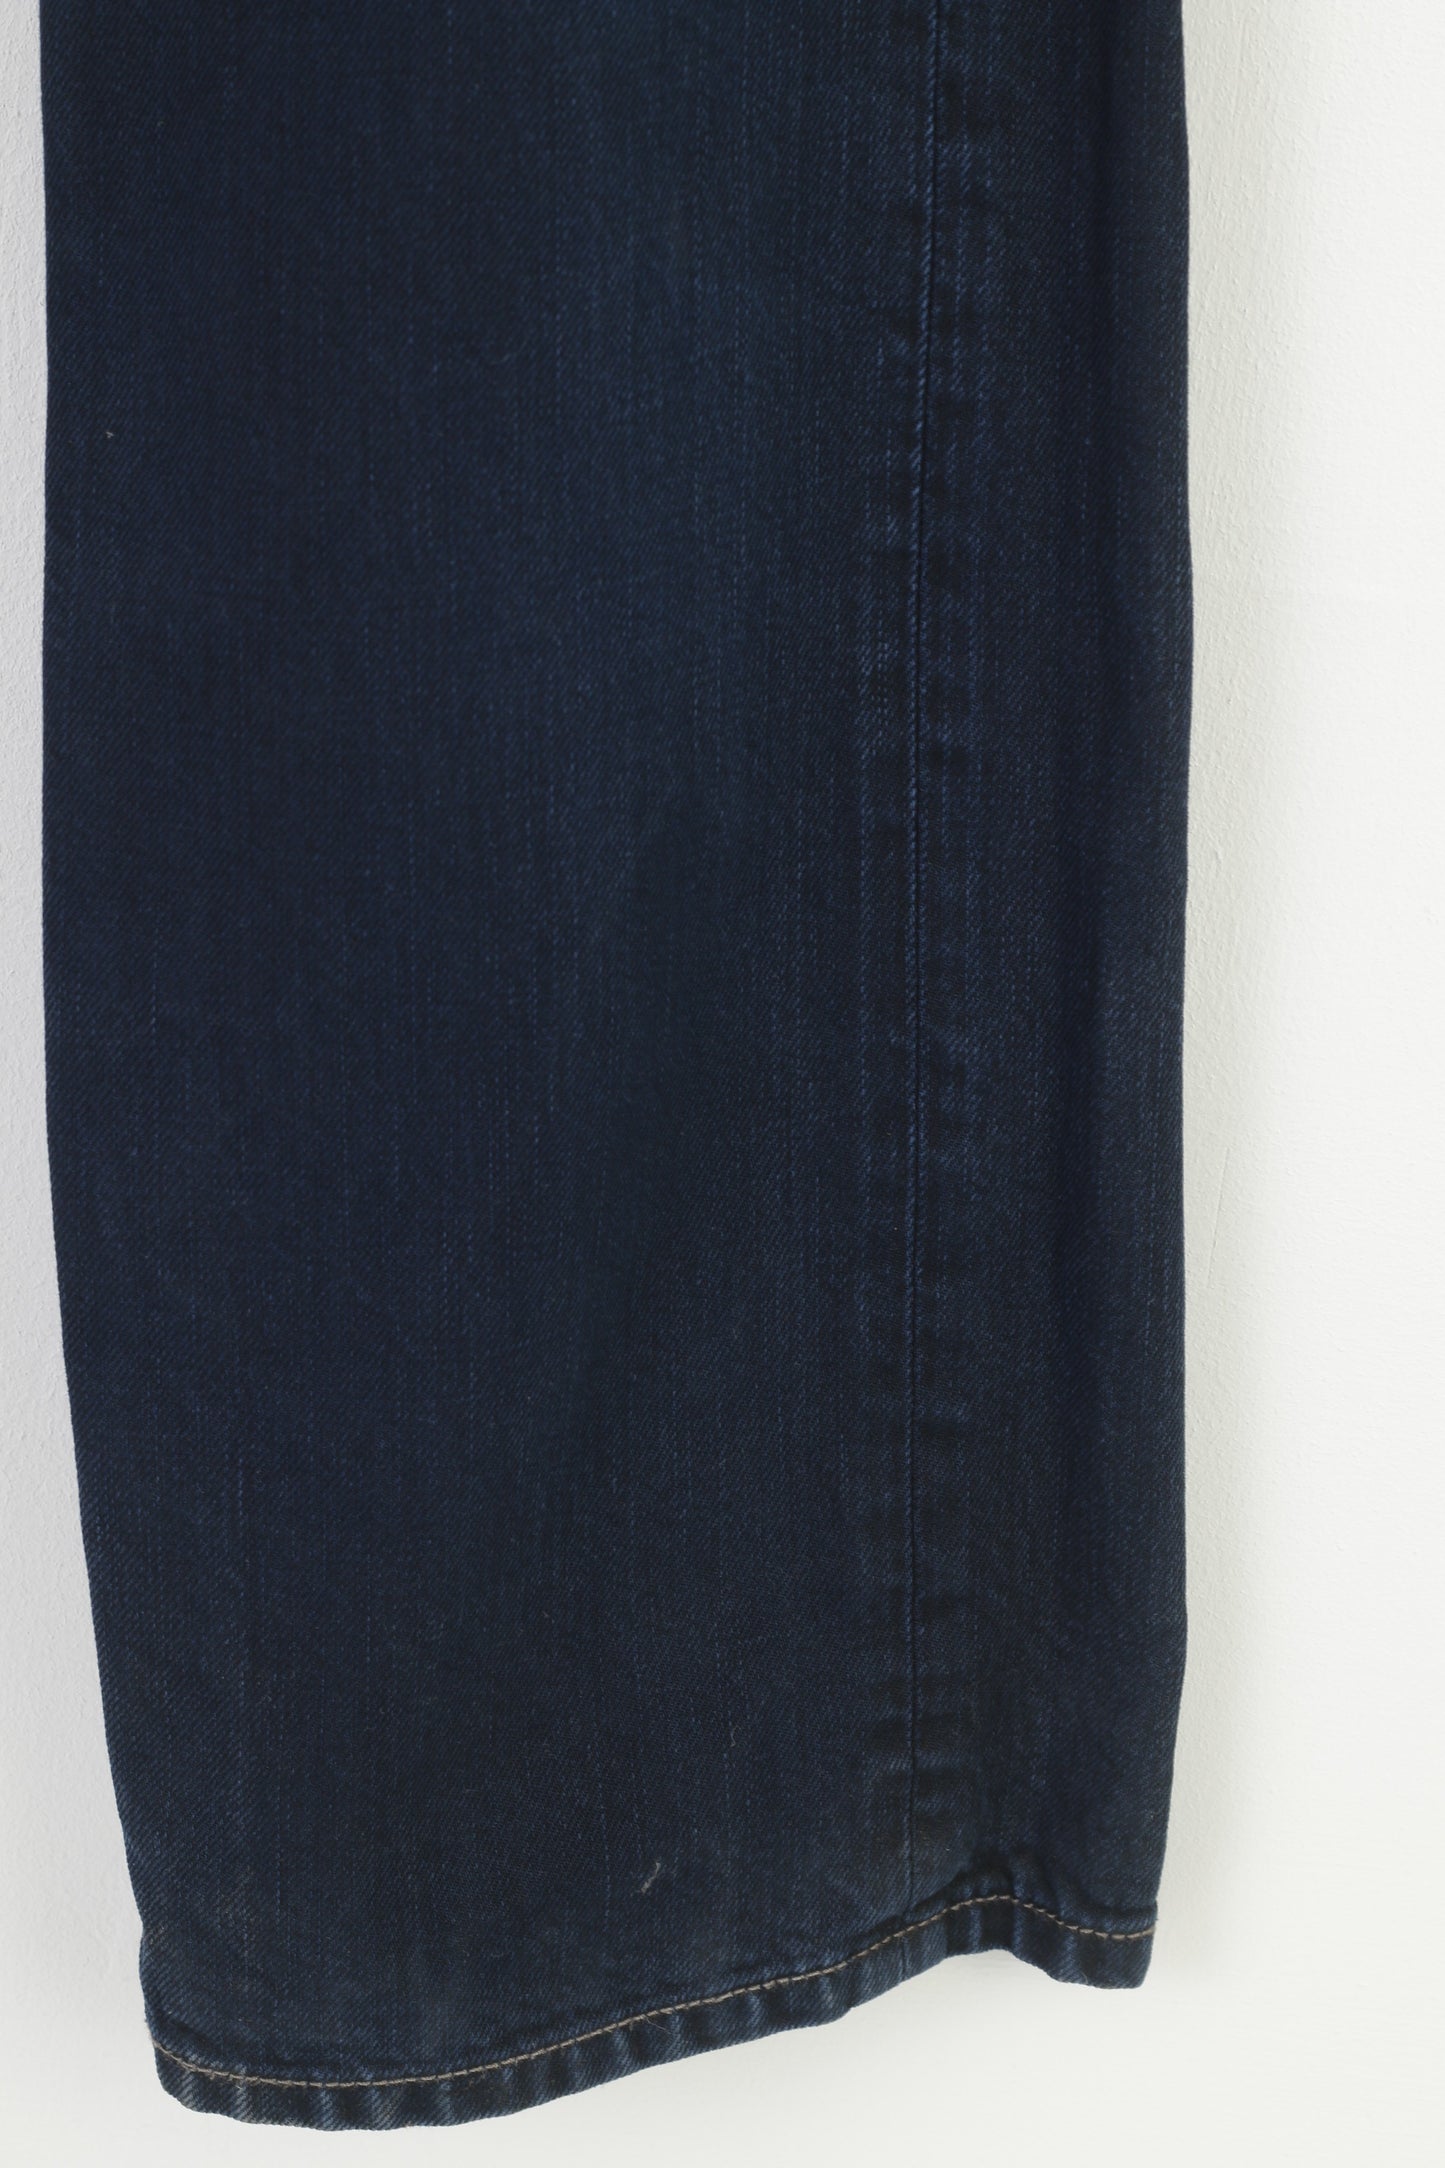 Diesel Industry – pantalon en jean Vintage pour hommes, 30 pantalons en coton bleu marine, bas Larkee